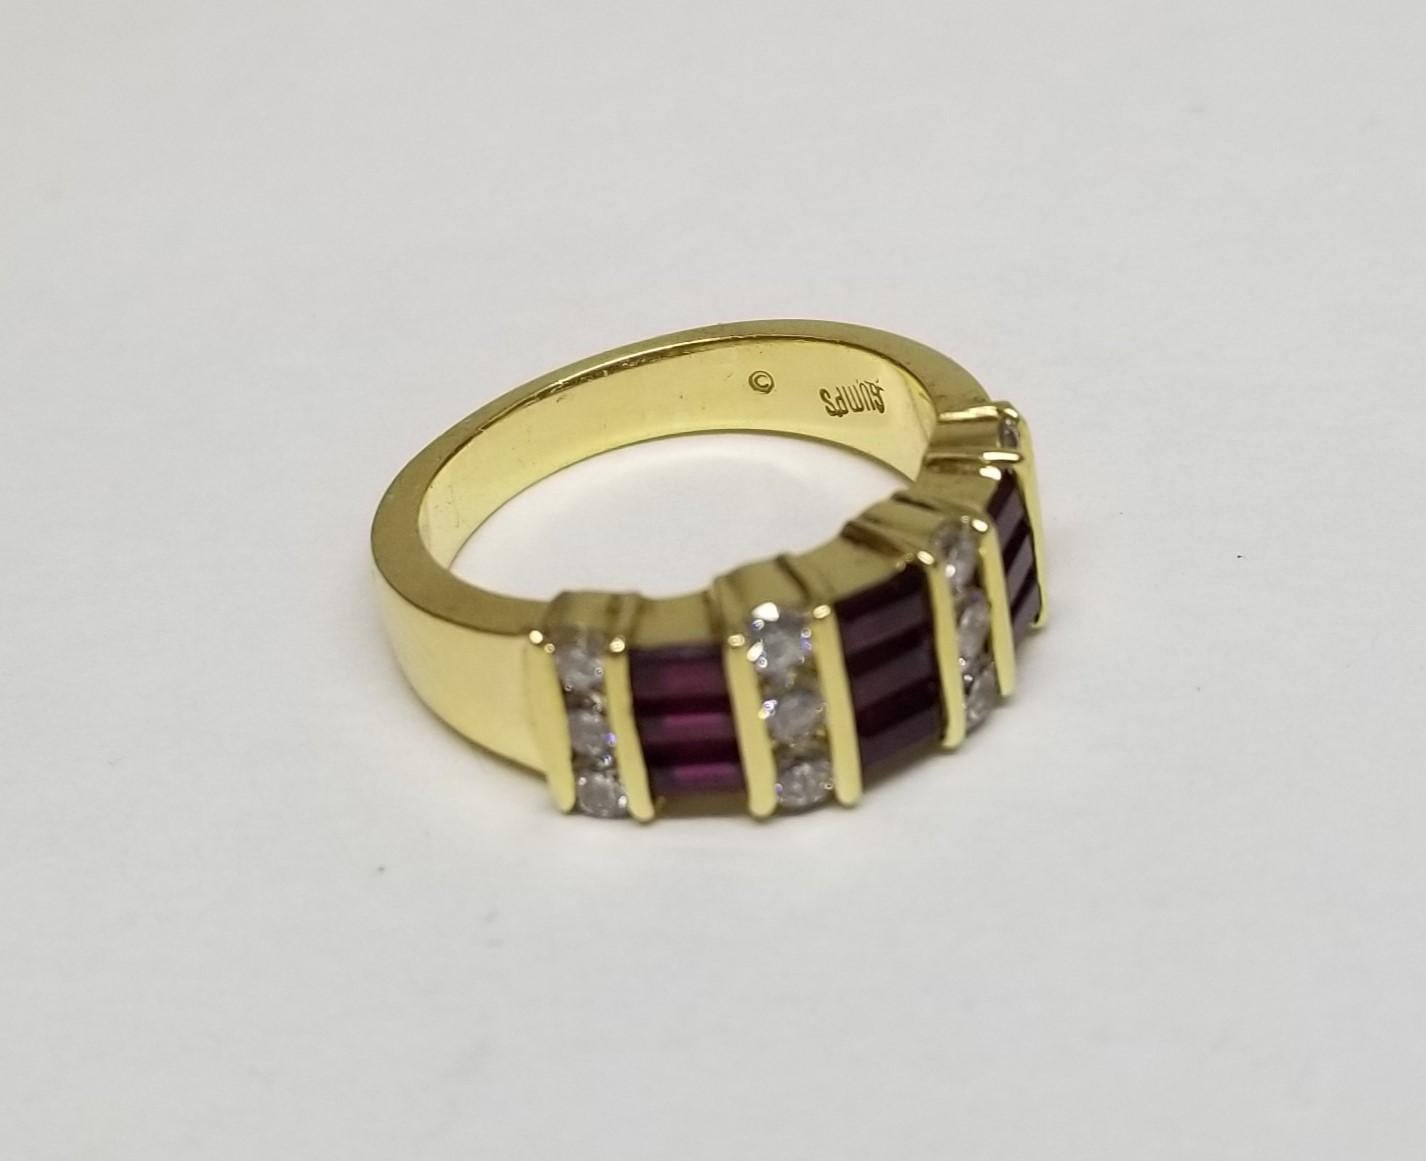 Der von Meister Gumps aus San Francisco entworfene Ring aus 18 Karat Gelbgold ist wunderschön.  Kanalbesatz mit abwechselnden Reihen von Rubinen im Baguetteschliff  und    runder Diamant  Der Ring misst an der breitesten Stelle 7,4 mm und verjüngt